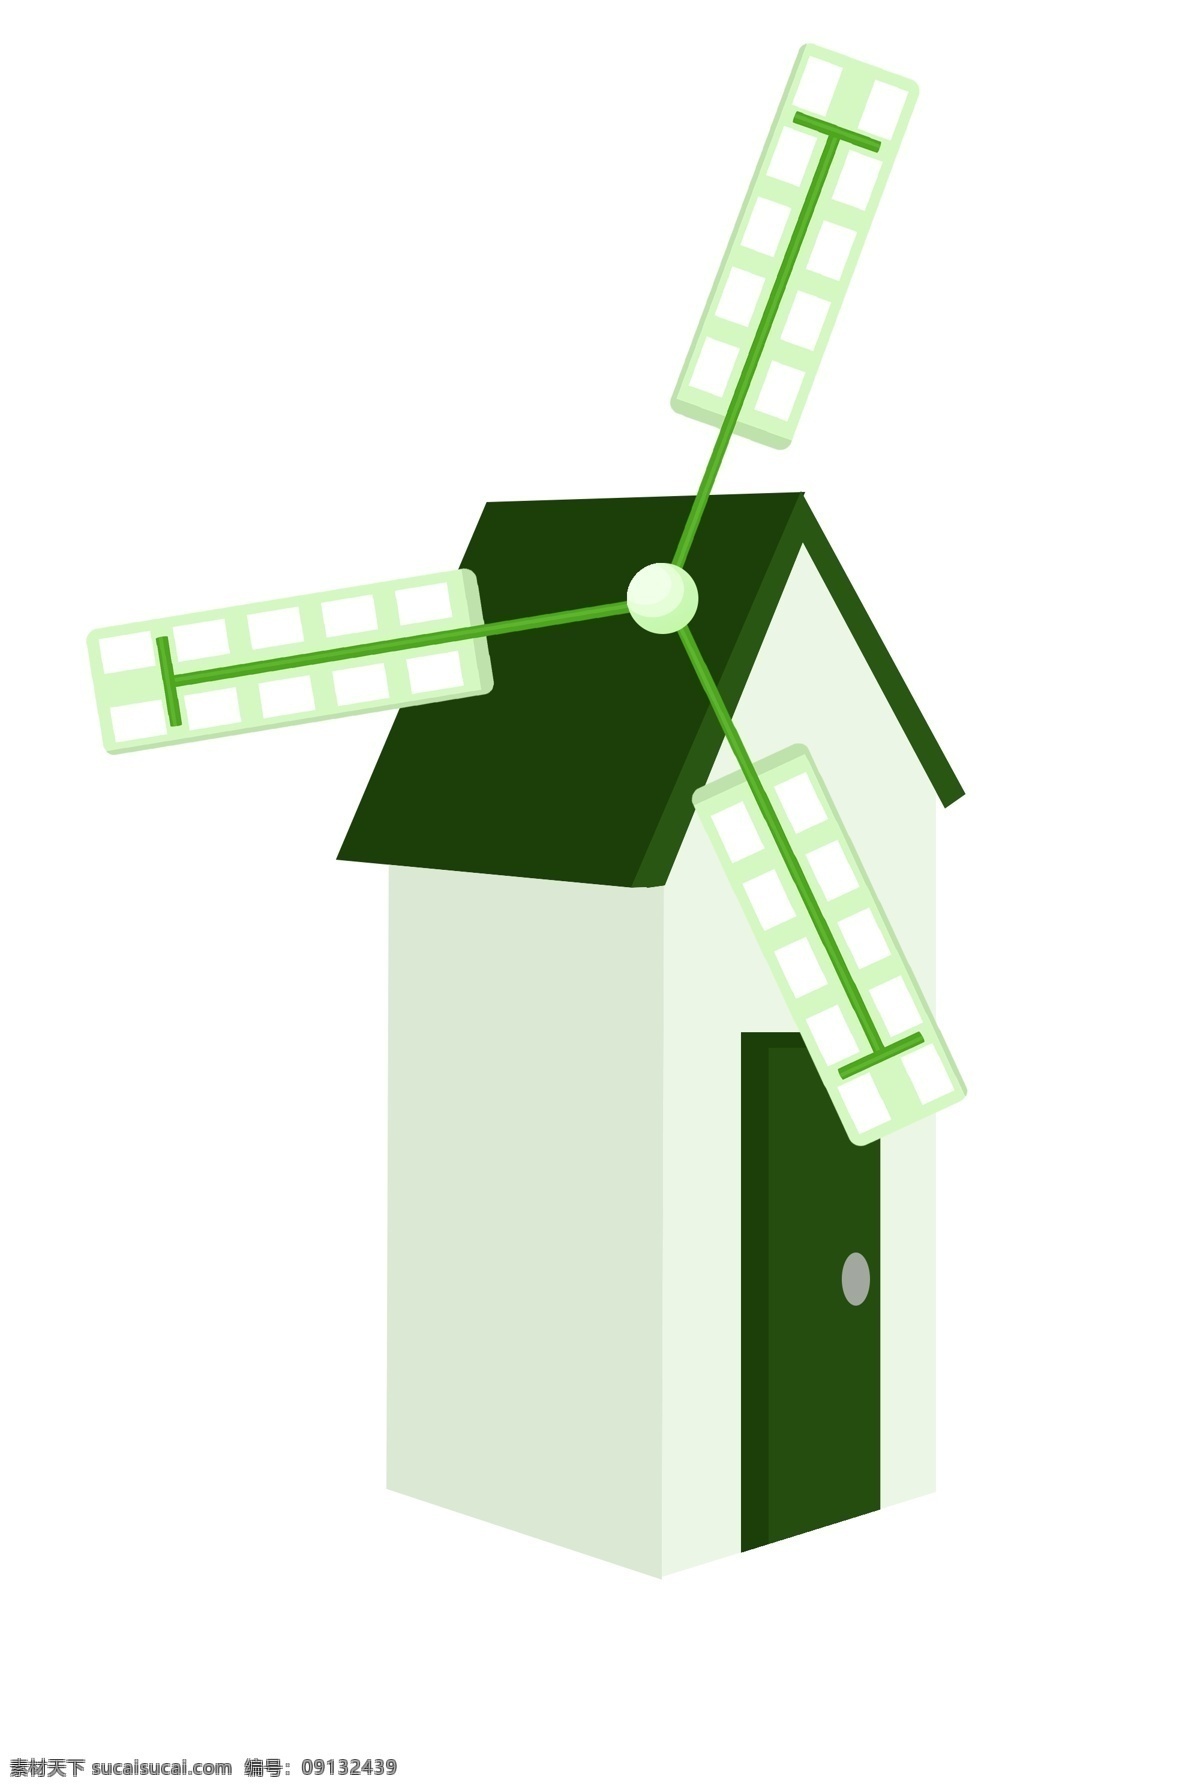 绿色 风车 装饰 插画 绿色的风车 风车建筑 漂亮的风车 木头风车 木质风车 精美风车 卡通风车